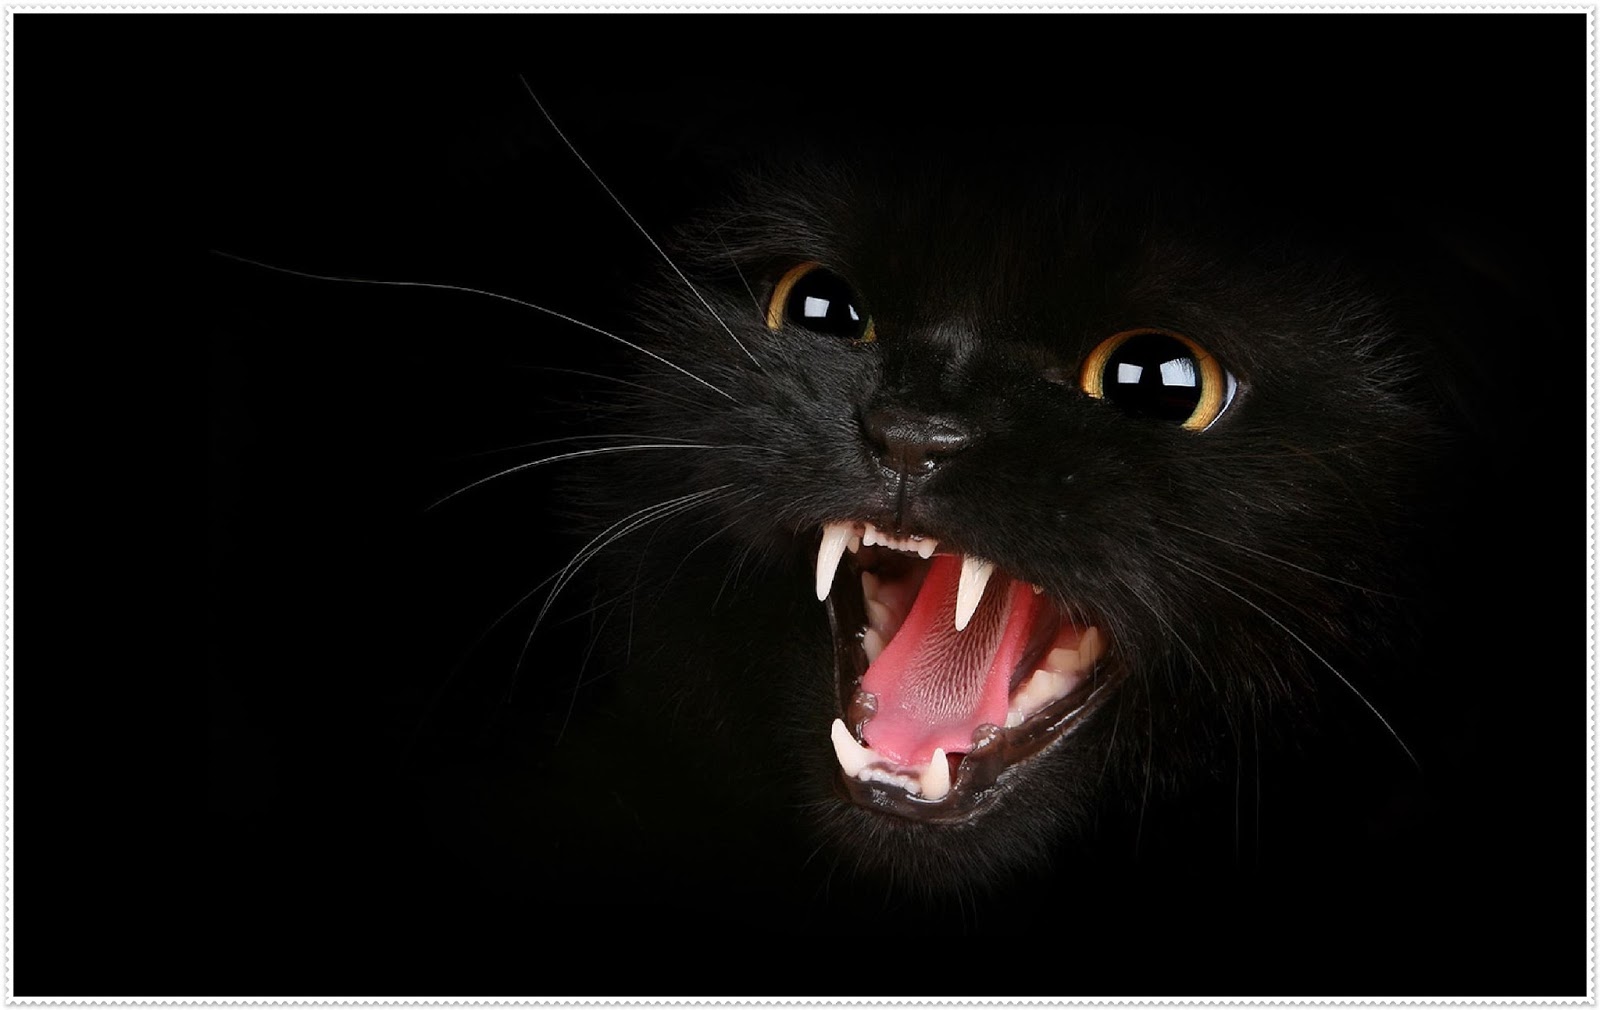 fond d'écran hitam putih,félidés,chat noir,chat,moustaches,chats de petite à moyenne taille